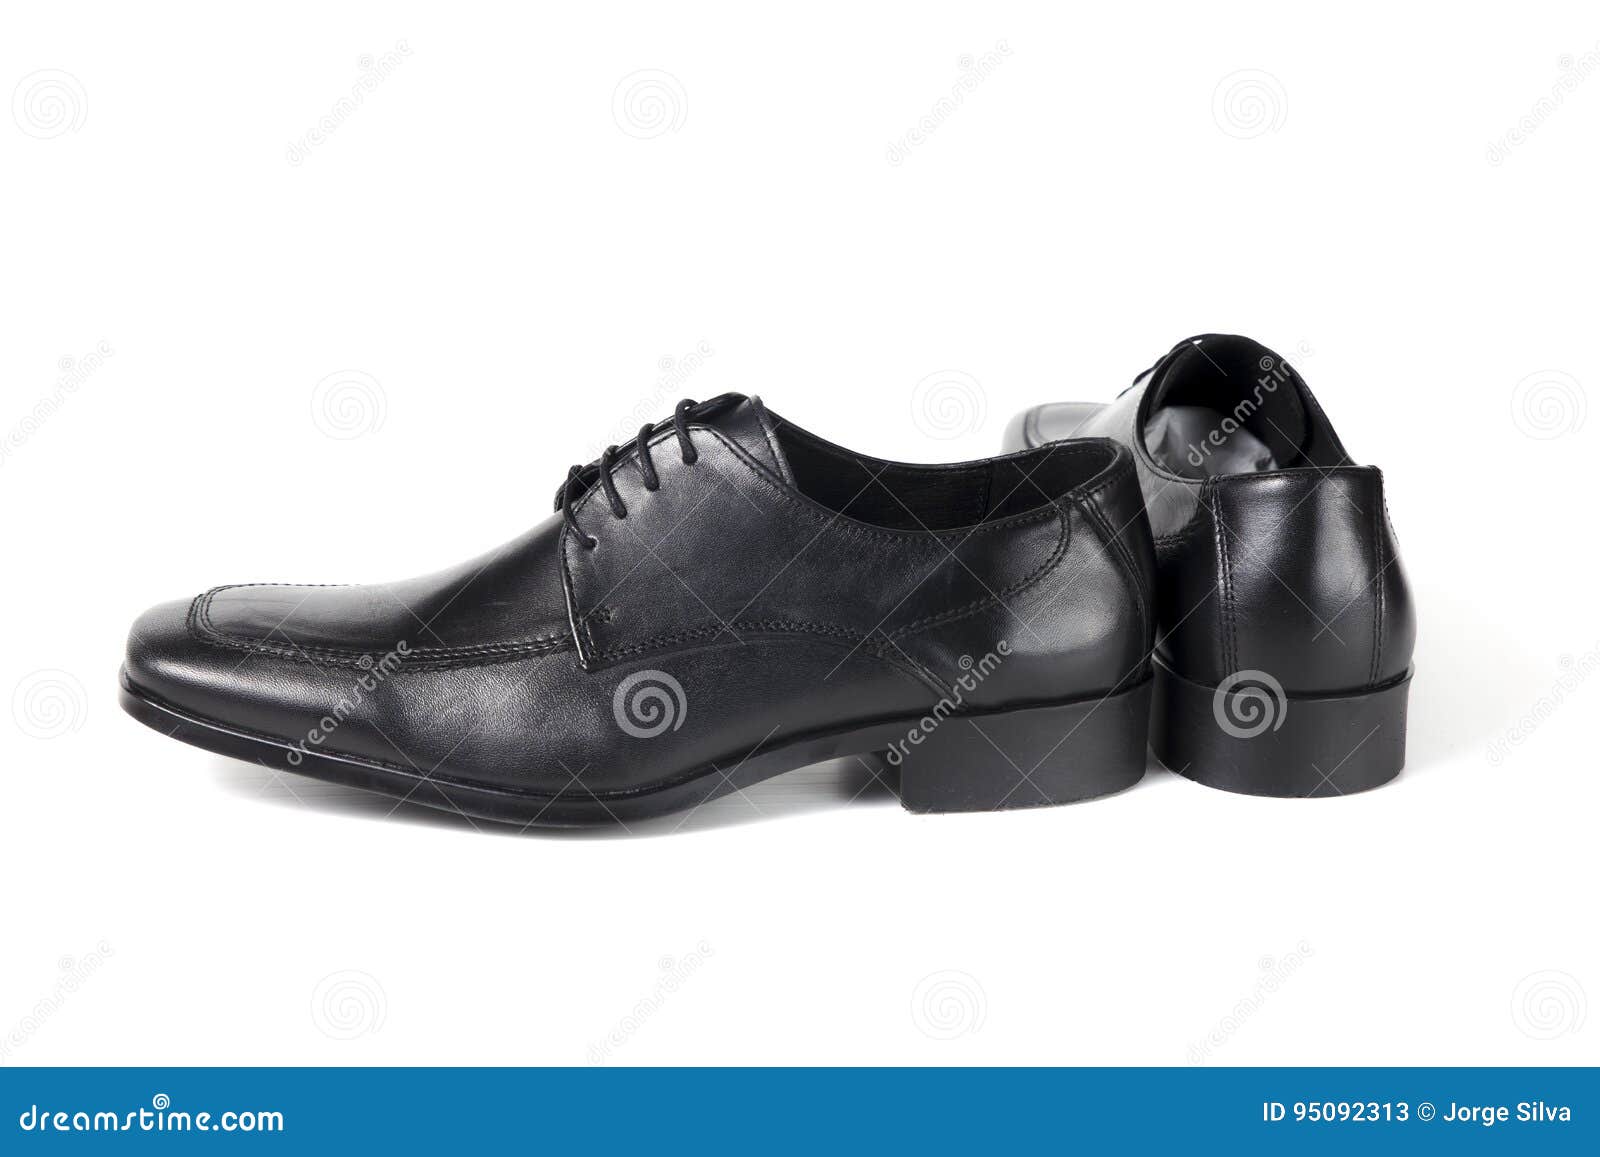 Shoe Isolated Background stock image. Image of design - 95092313